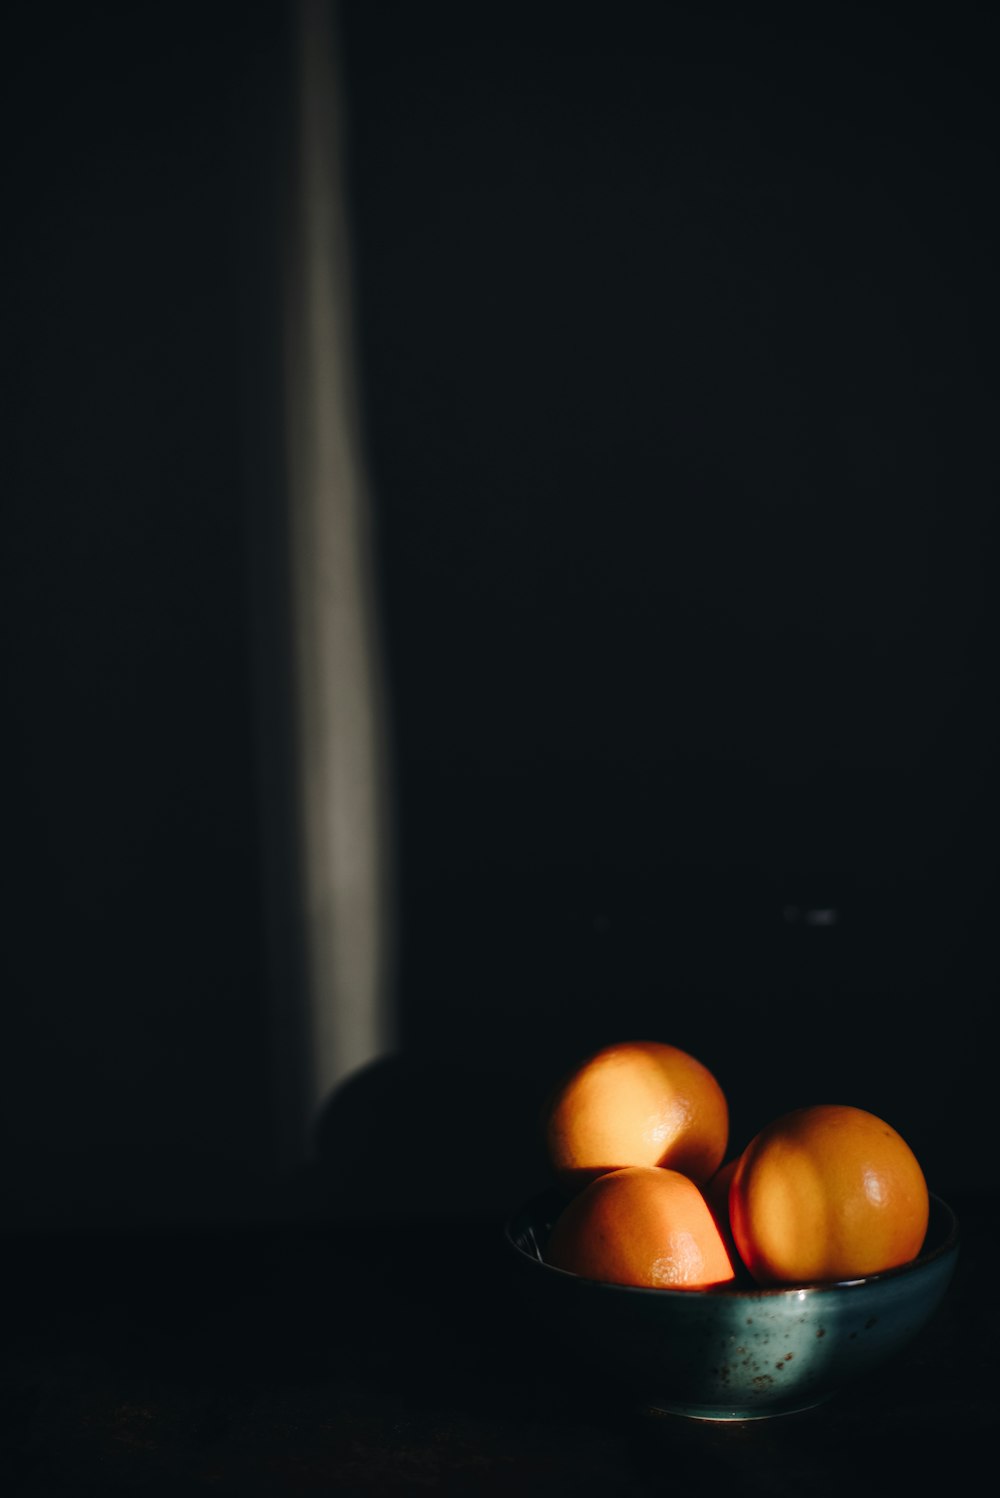 オレンジ色の柑橘系の果物3種とボウル